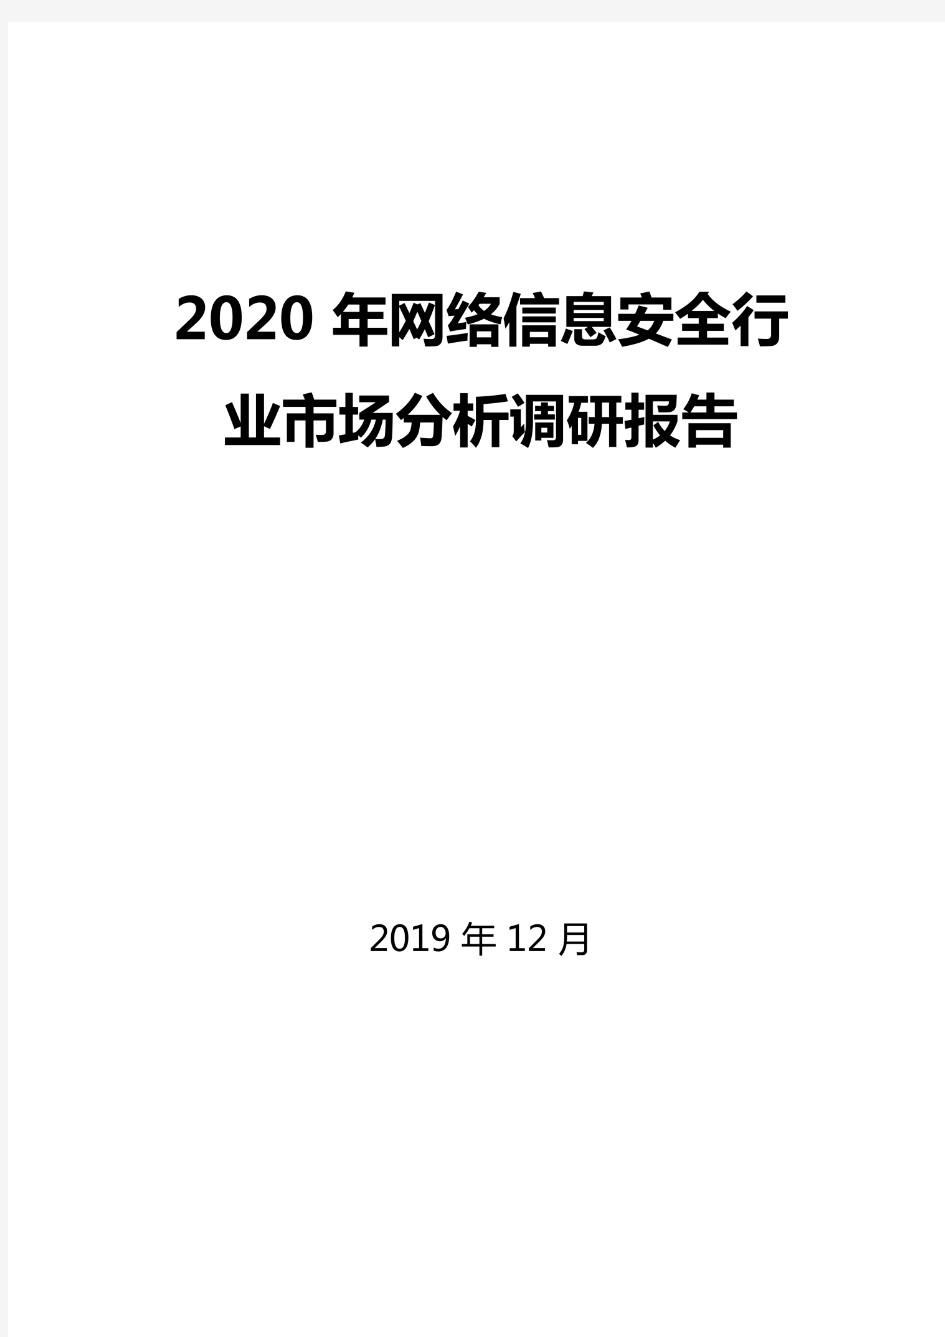 2020年网络信息安全行业市场分析调研报告